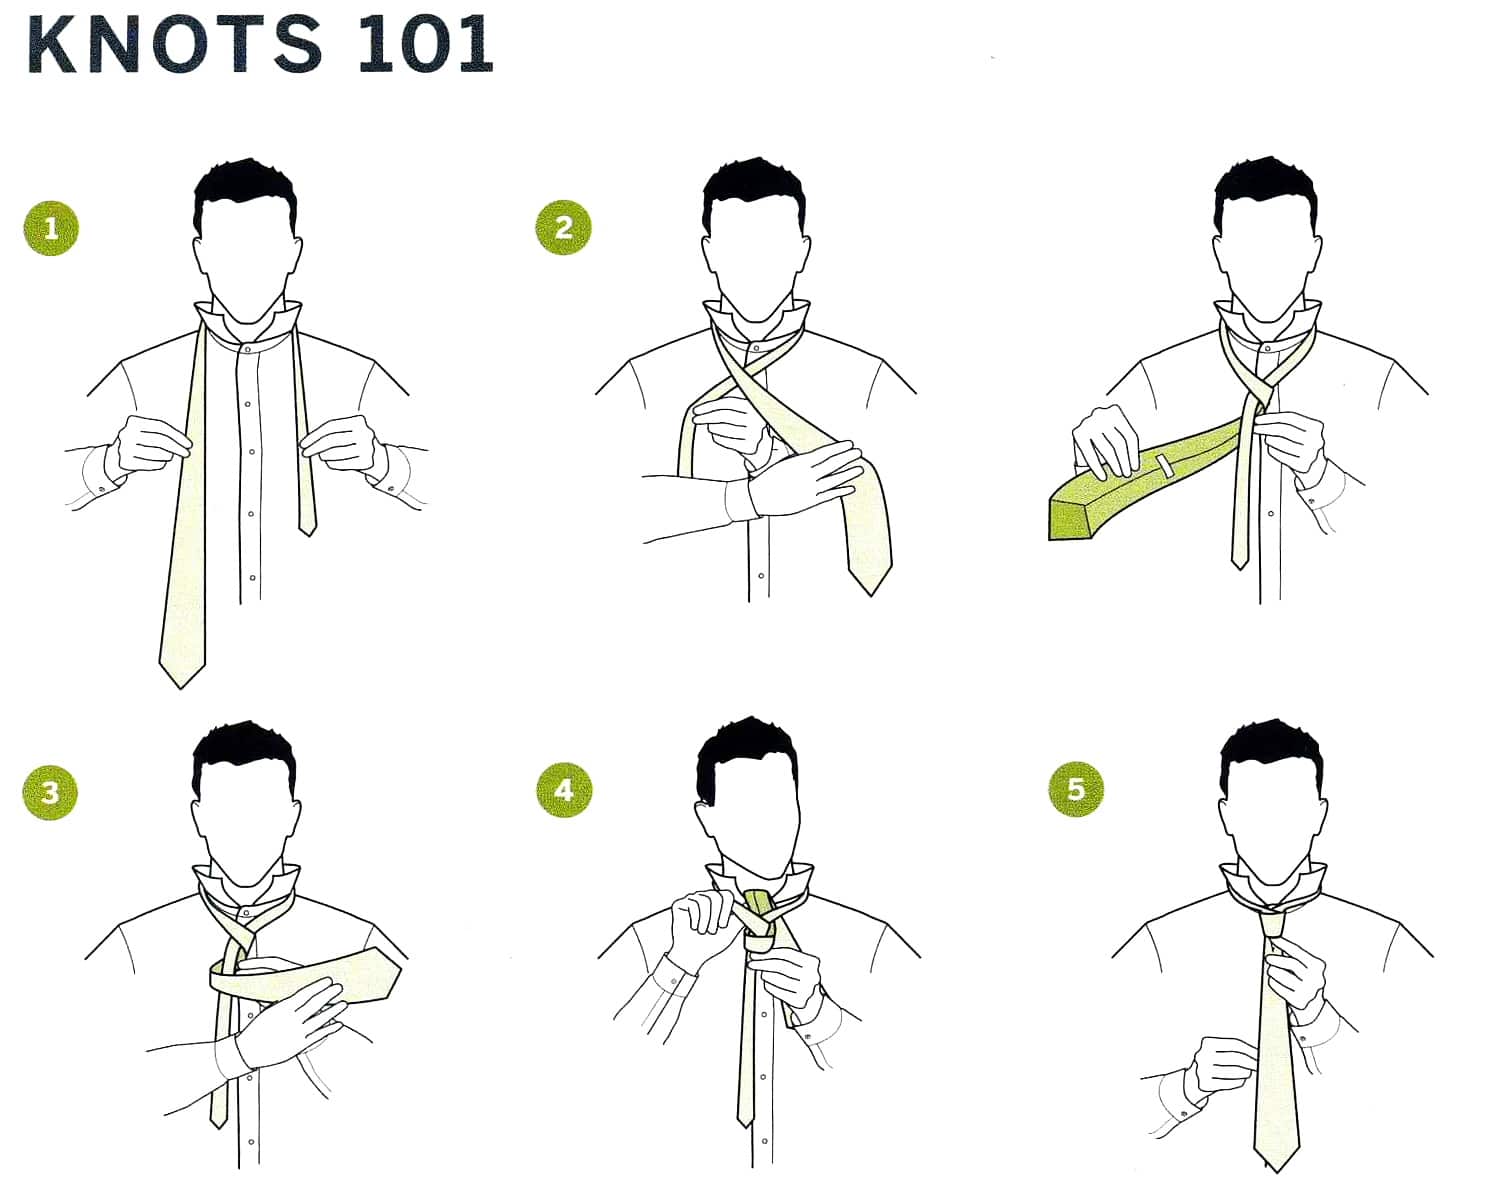 Как завязать галстук пошагово простой способ фото и видео